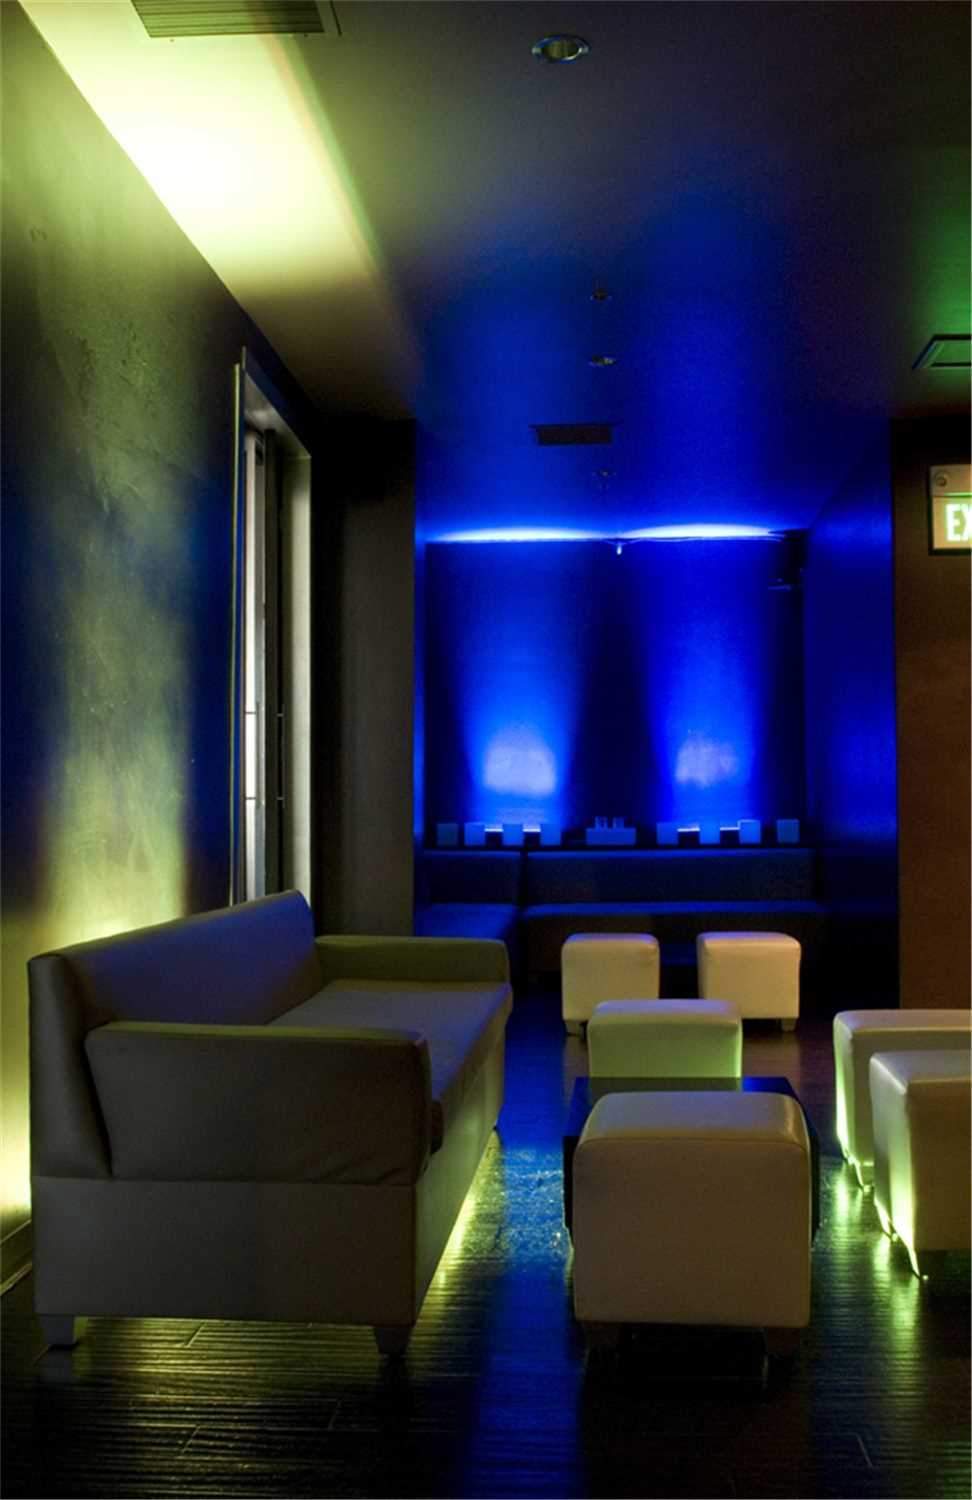 American DJ Mega Bar LED RC 1 Meter LED Bar - PSSL ProSound and Stage Lighting